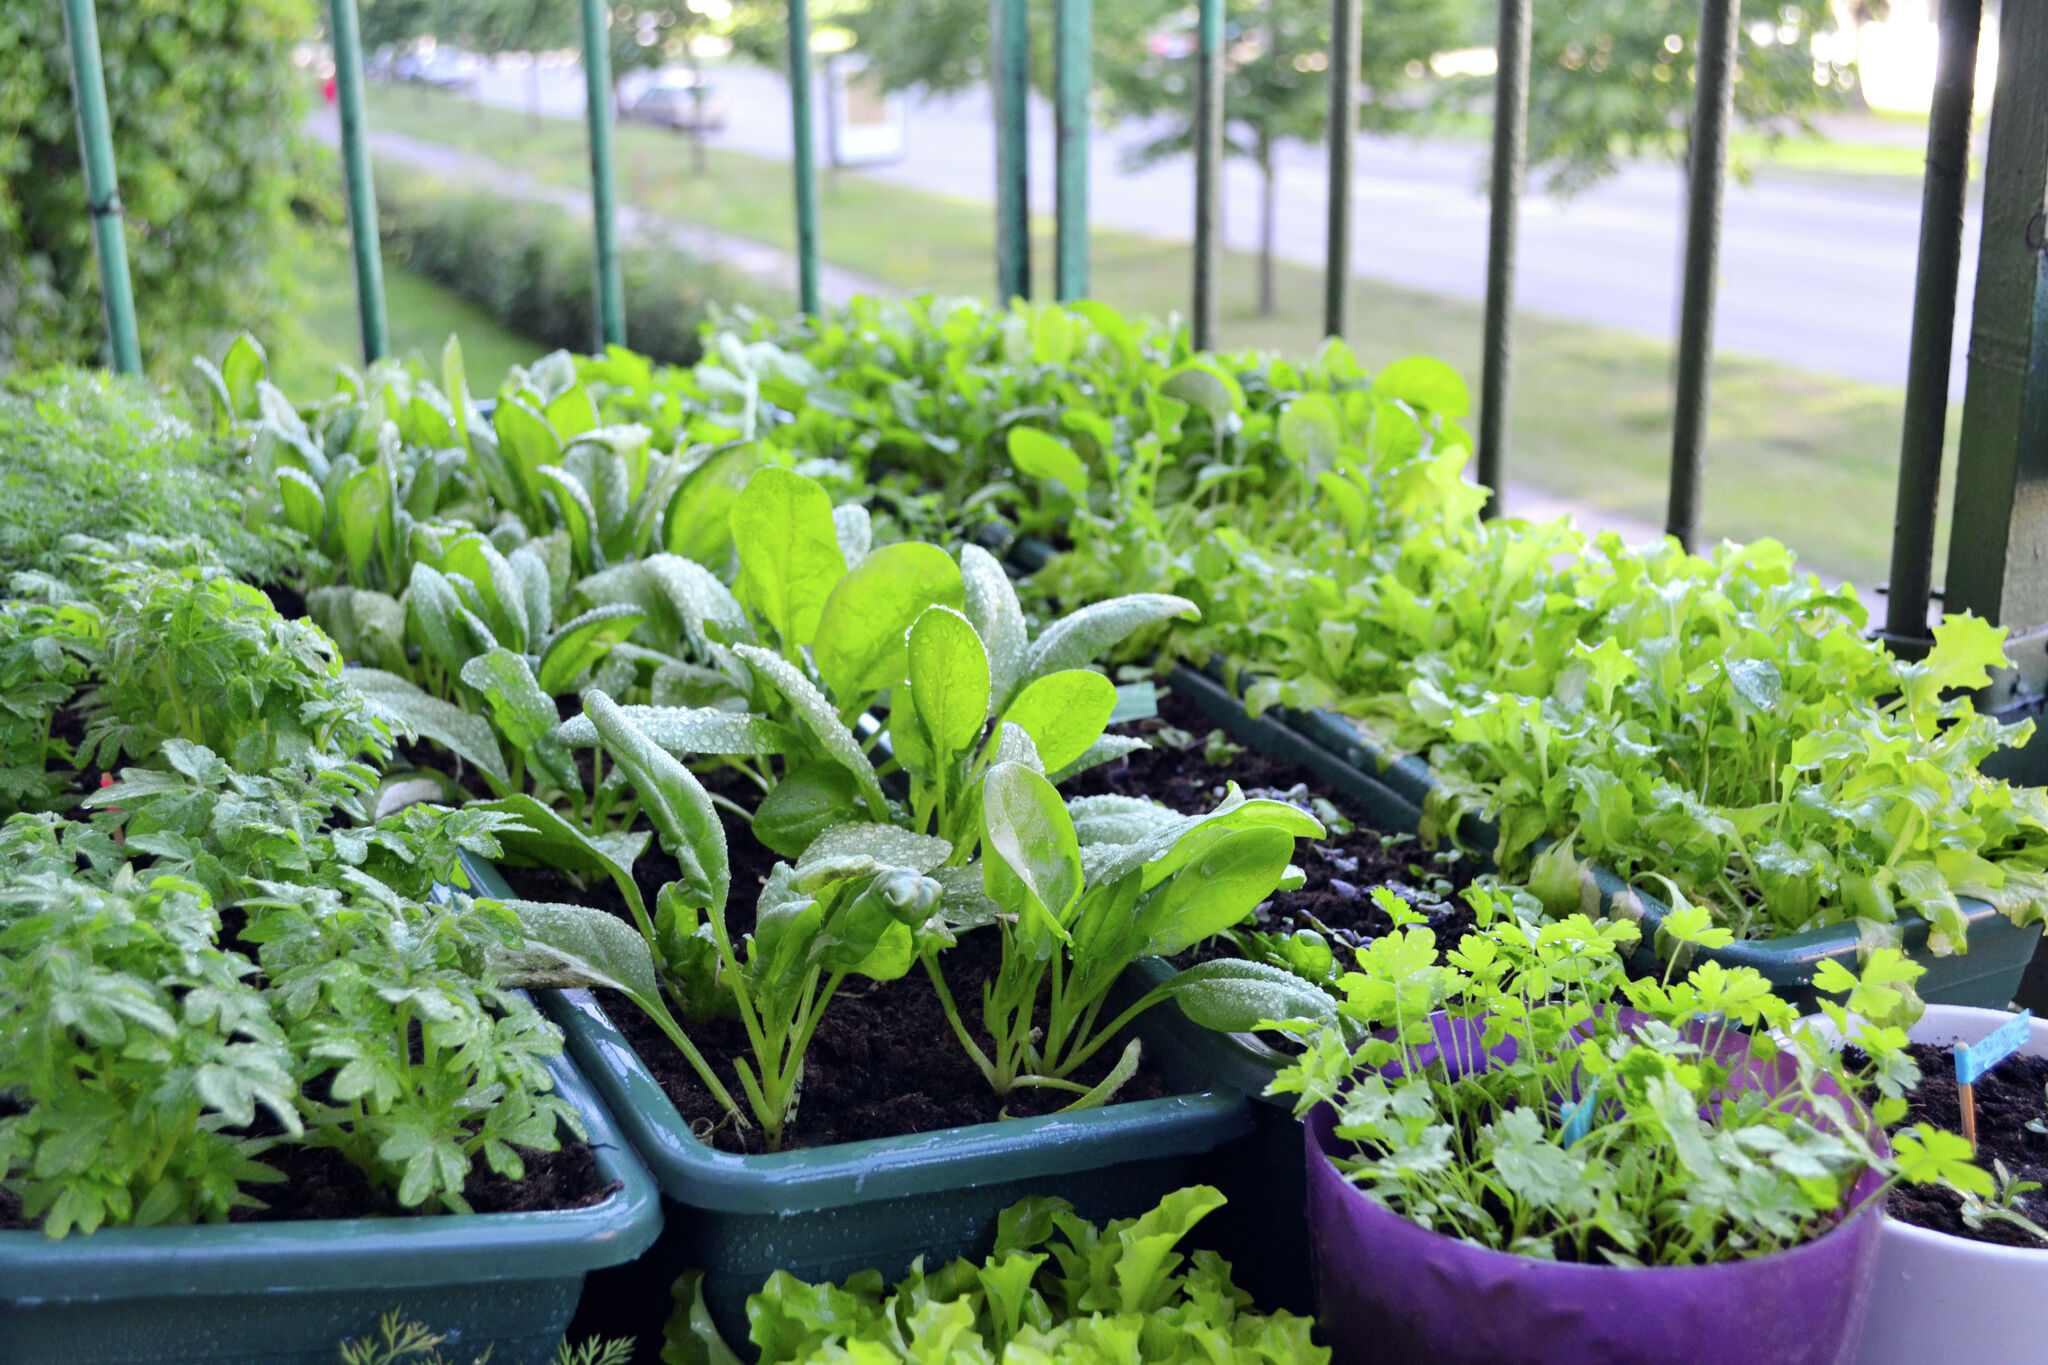 Growing Vegetables in Tubs